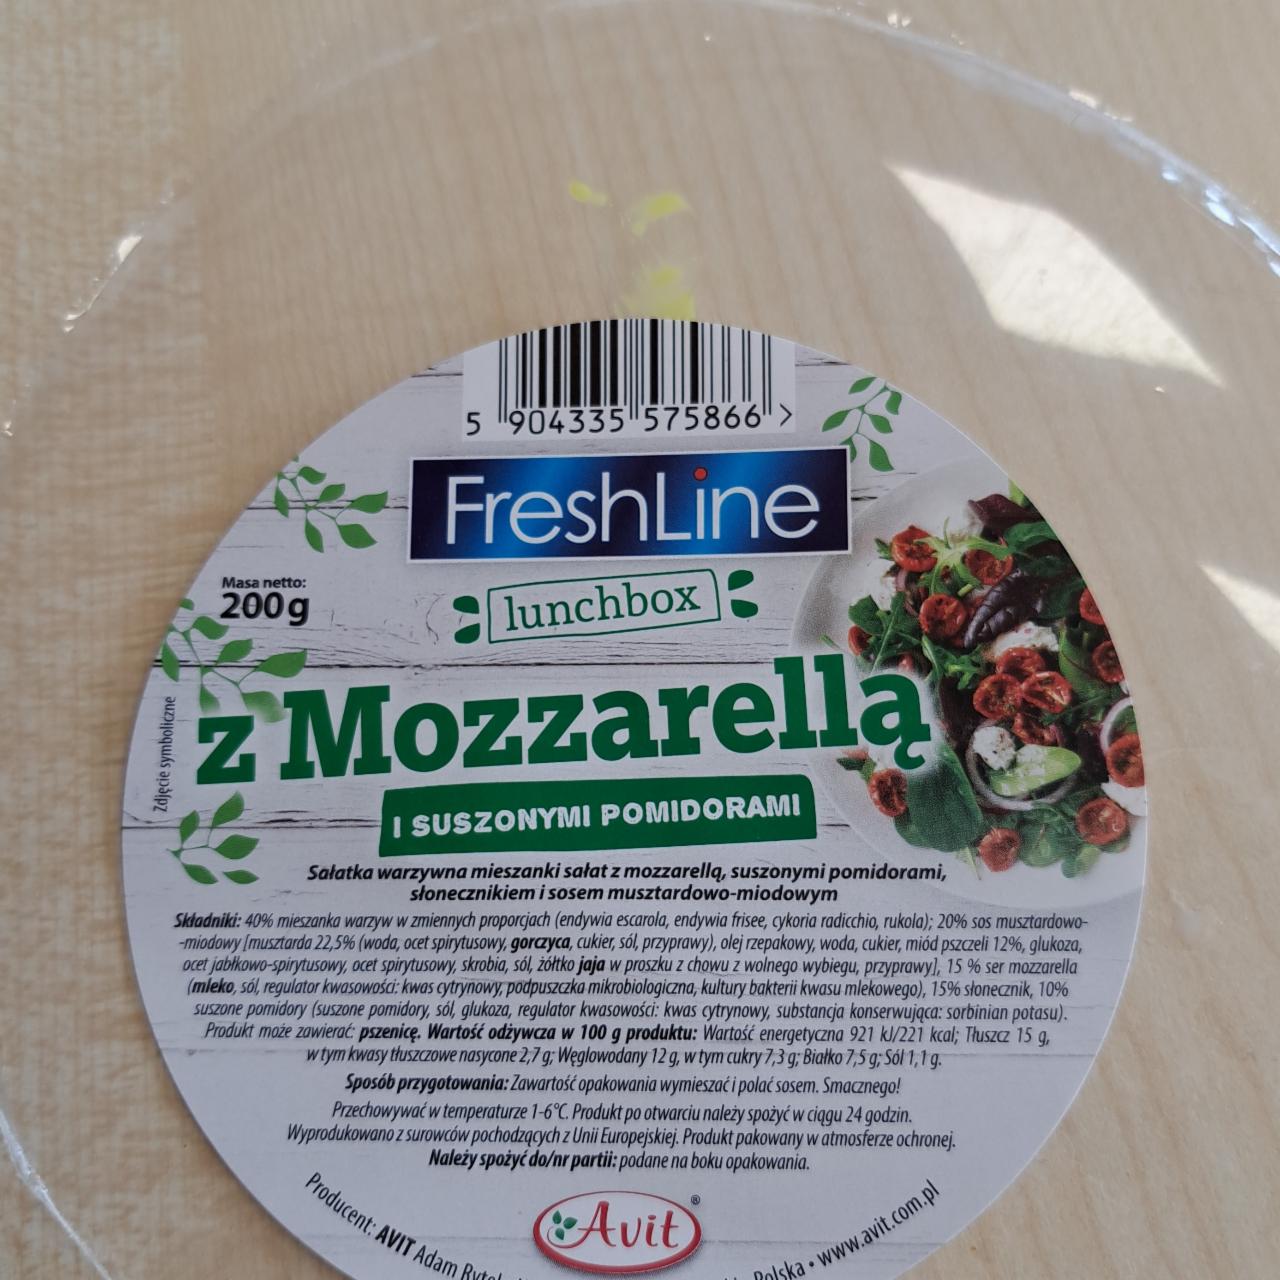 Fotografie - Lunchbox z Mozzarella i suszonymi pomidorami FreshLine